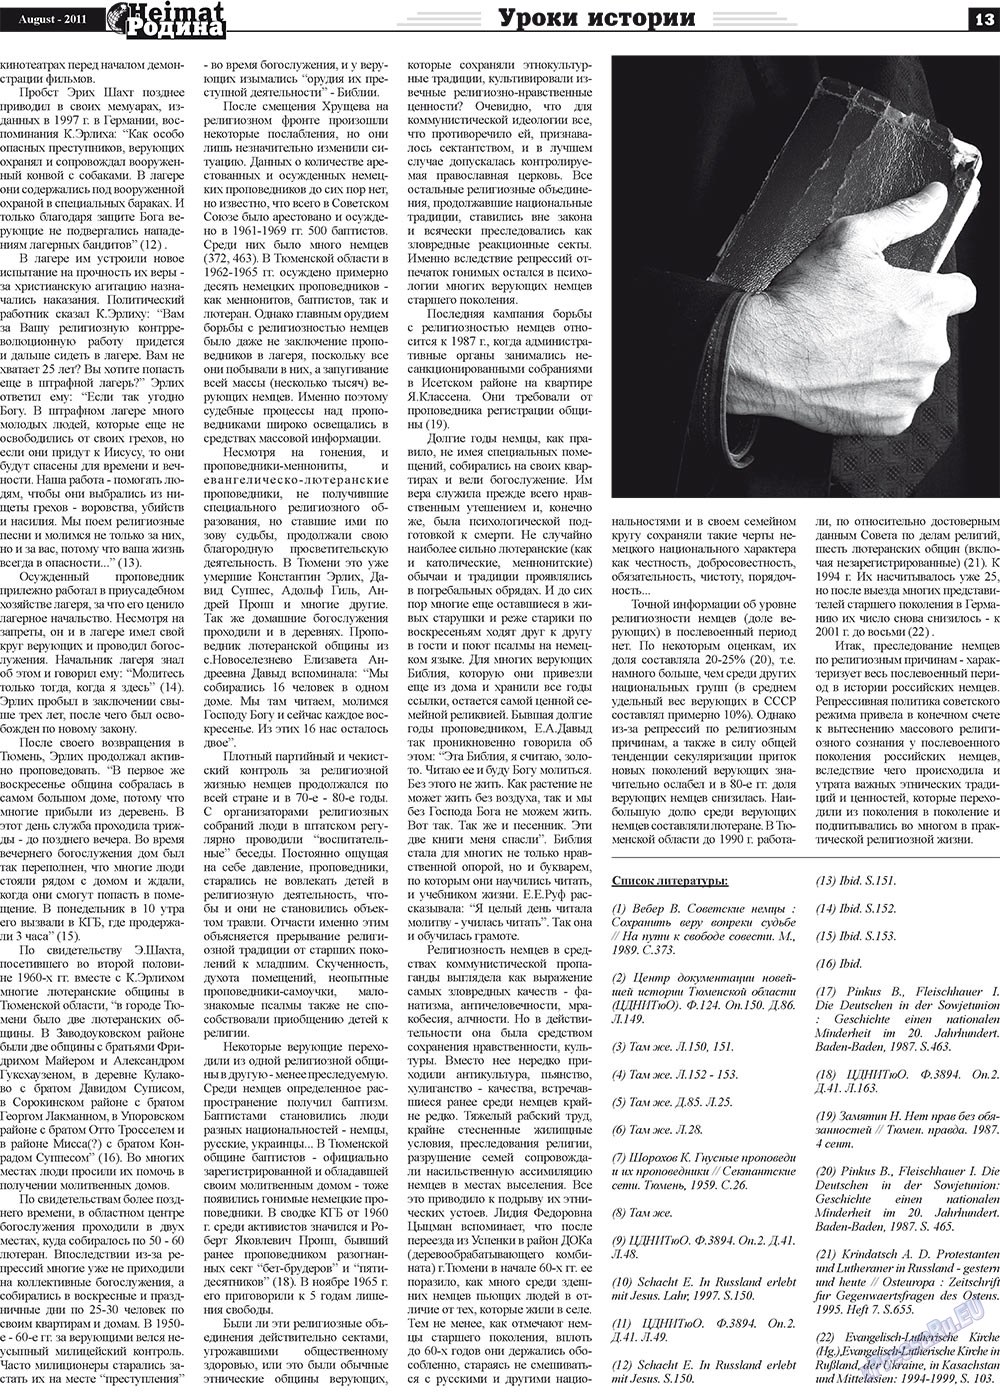 Heimat-Родина (газета). 2011 год, номер 8, стр. 13